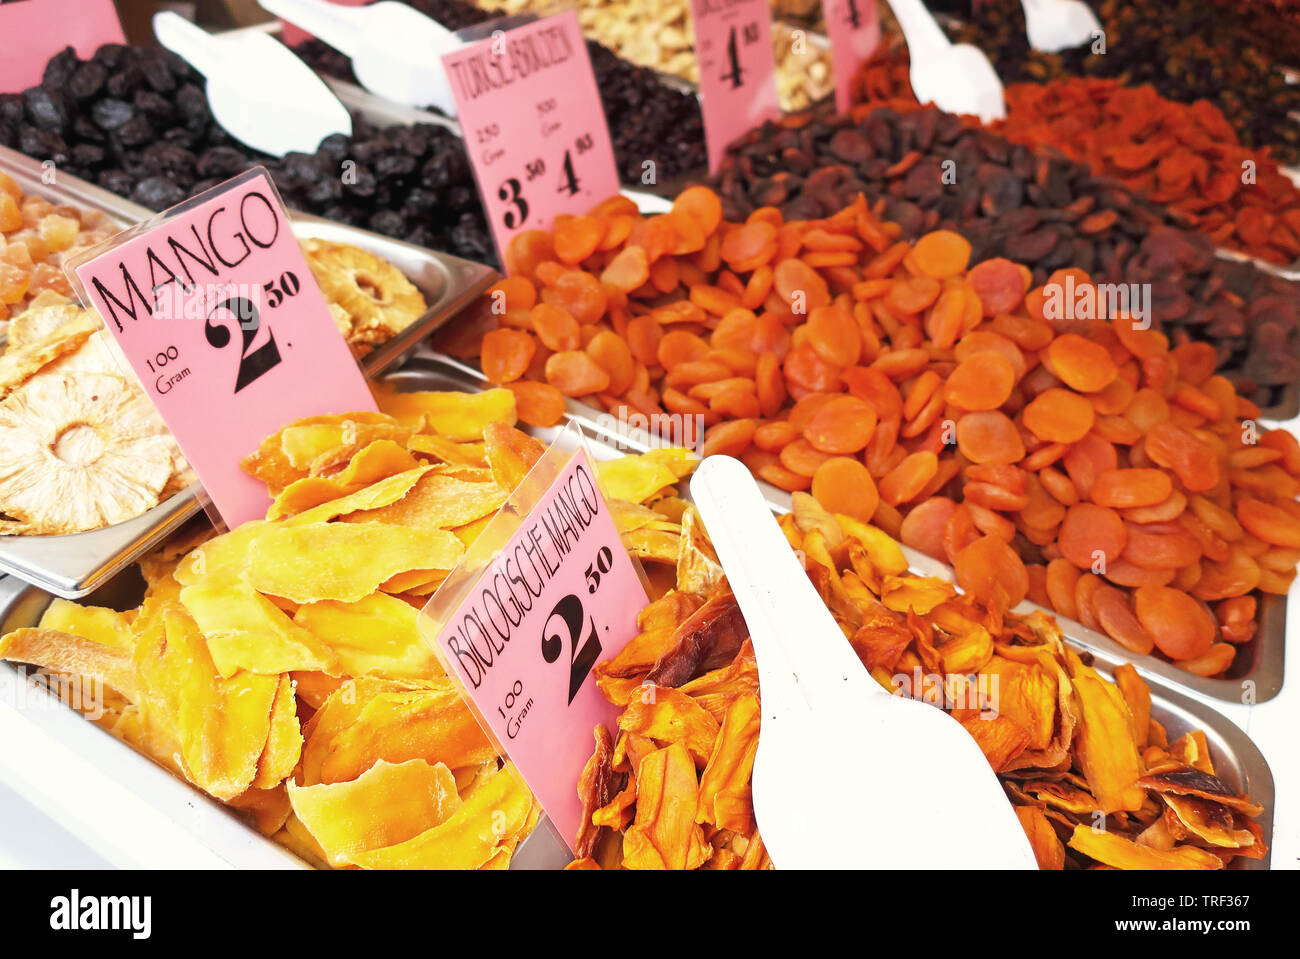 Lotes de frutos secos en un espacio de mercado Foto de stock